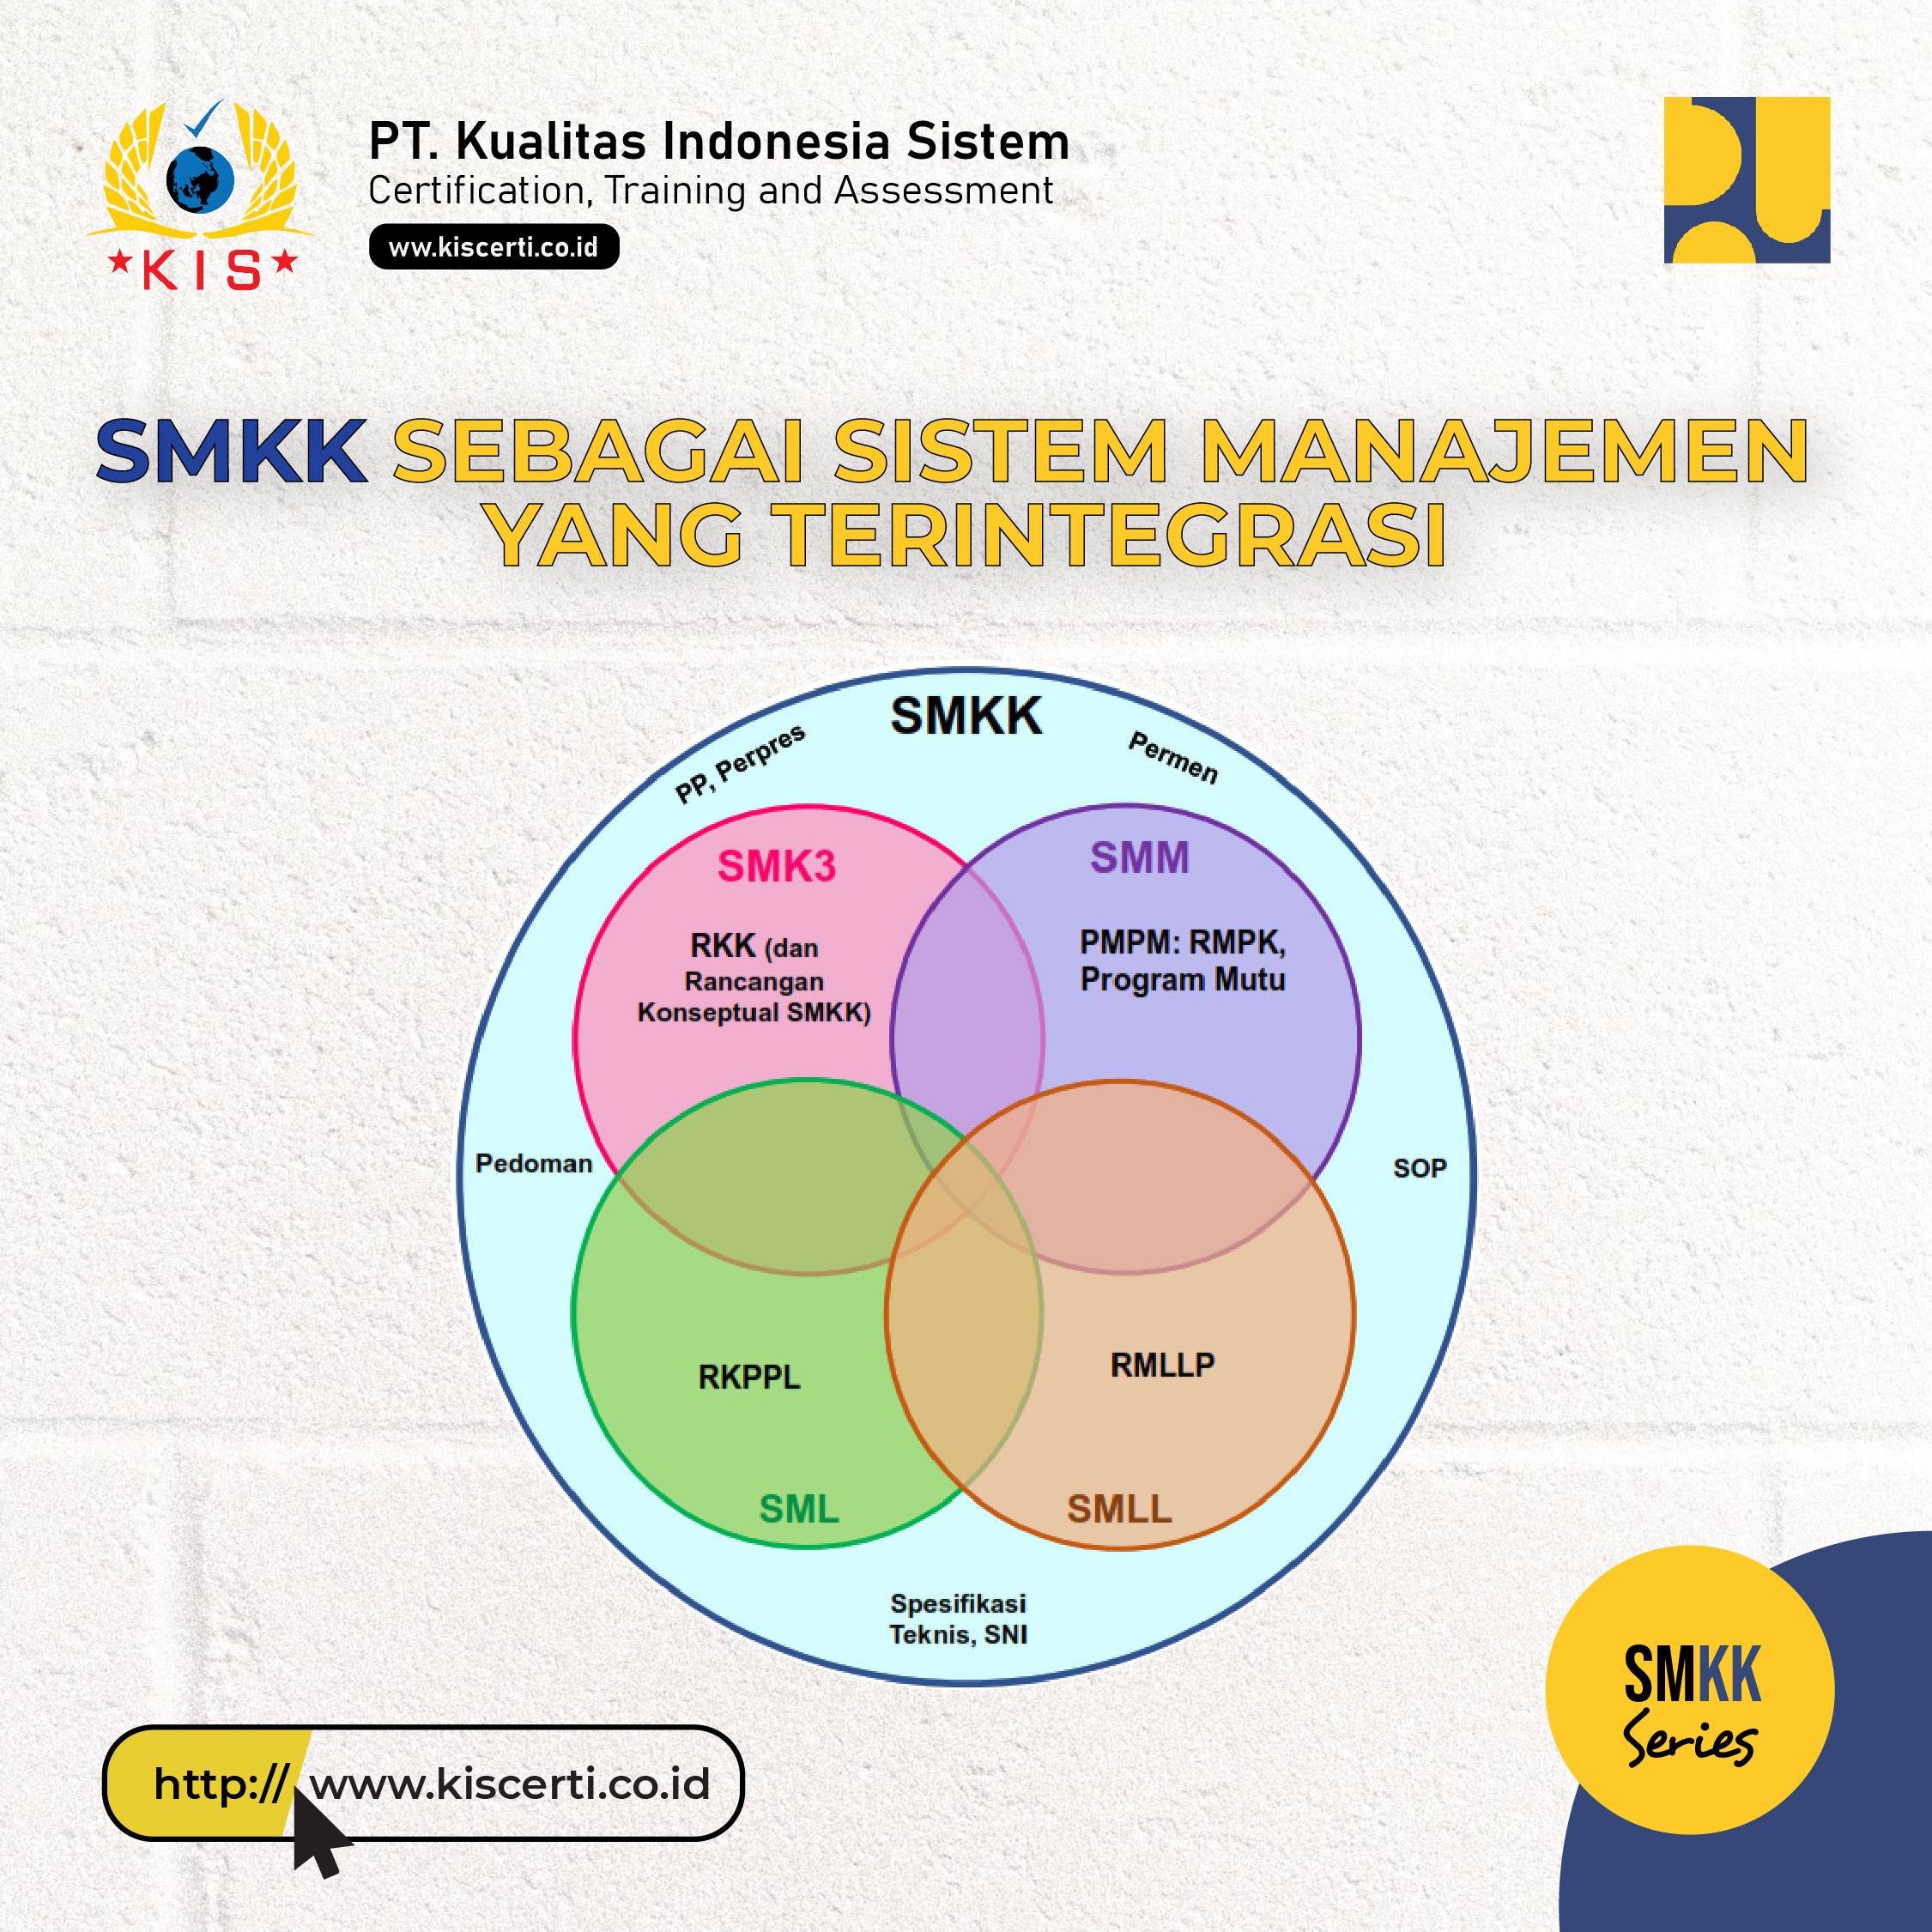 SMKK Sebagai Sistem Manajemen Yang Terintegrasi